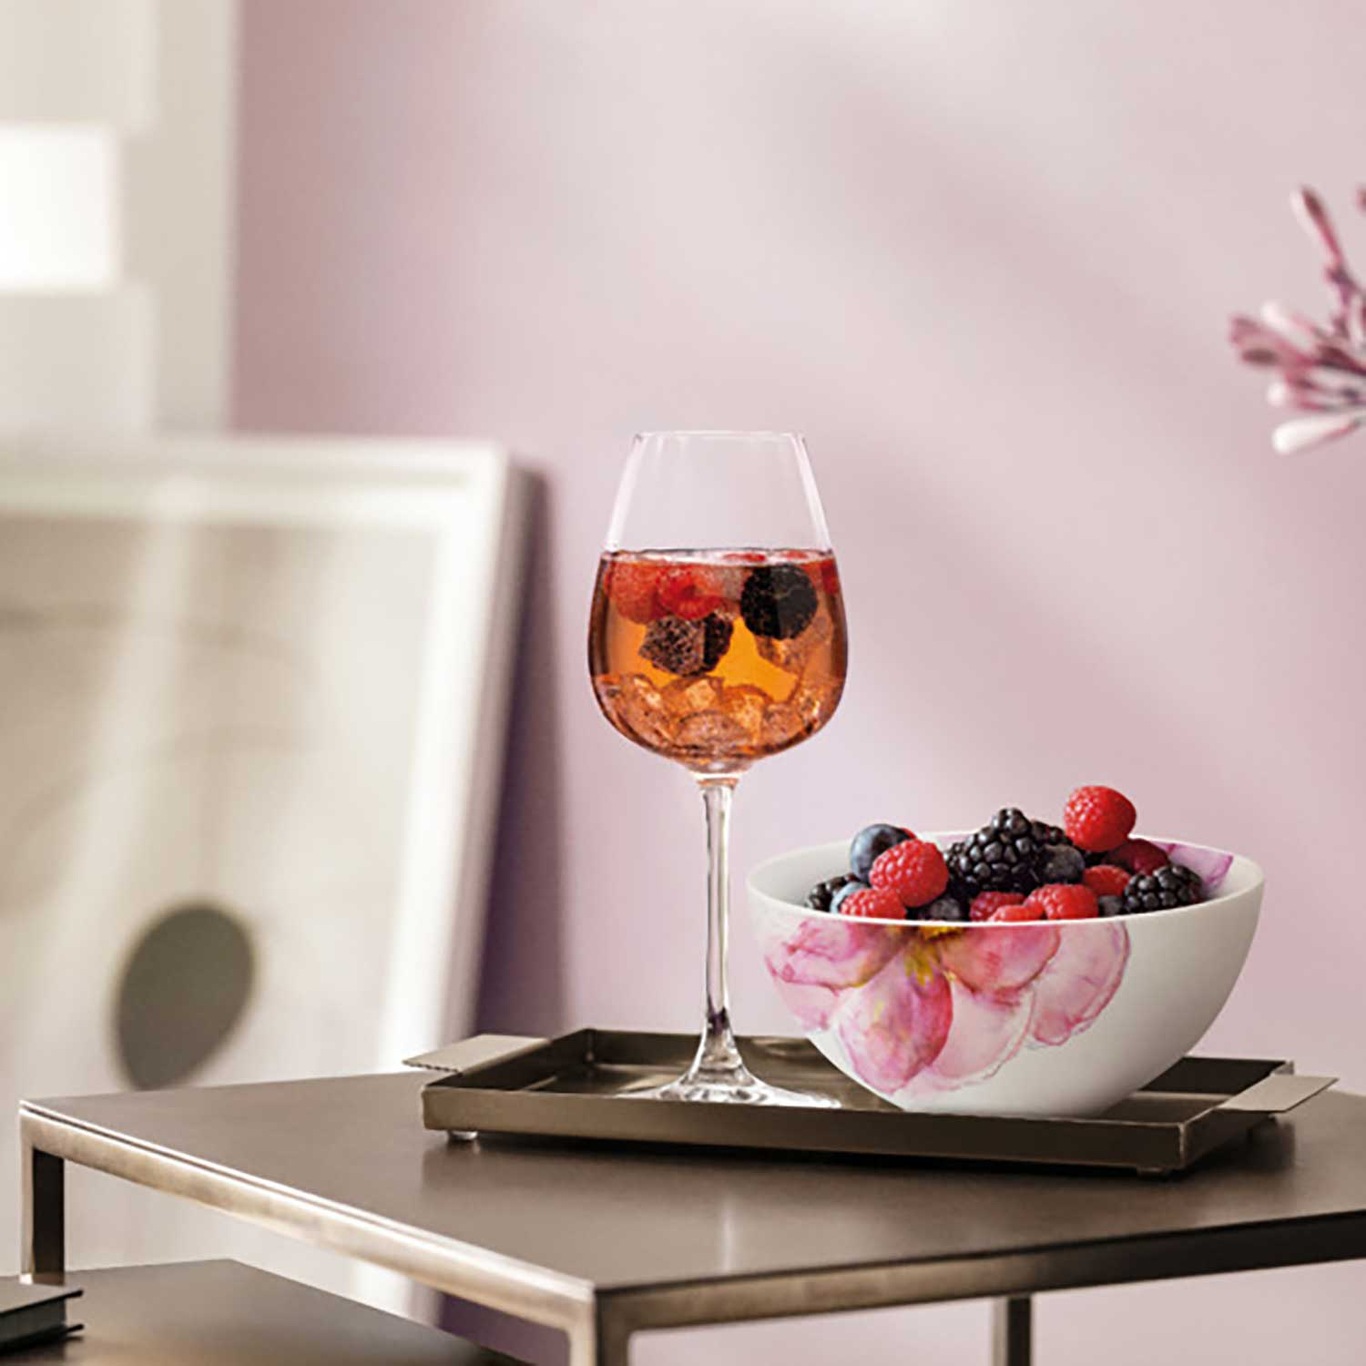 https://royaldesign.com/image/2/villeroy-boch-rose-garden-red-wine-goblet-set-4-pcs-1?w=800&quality=80